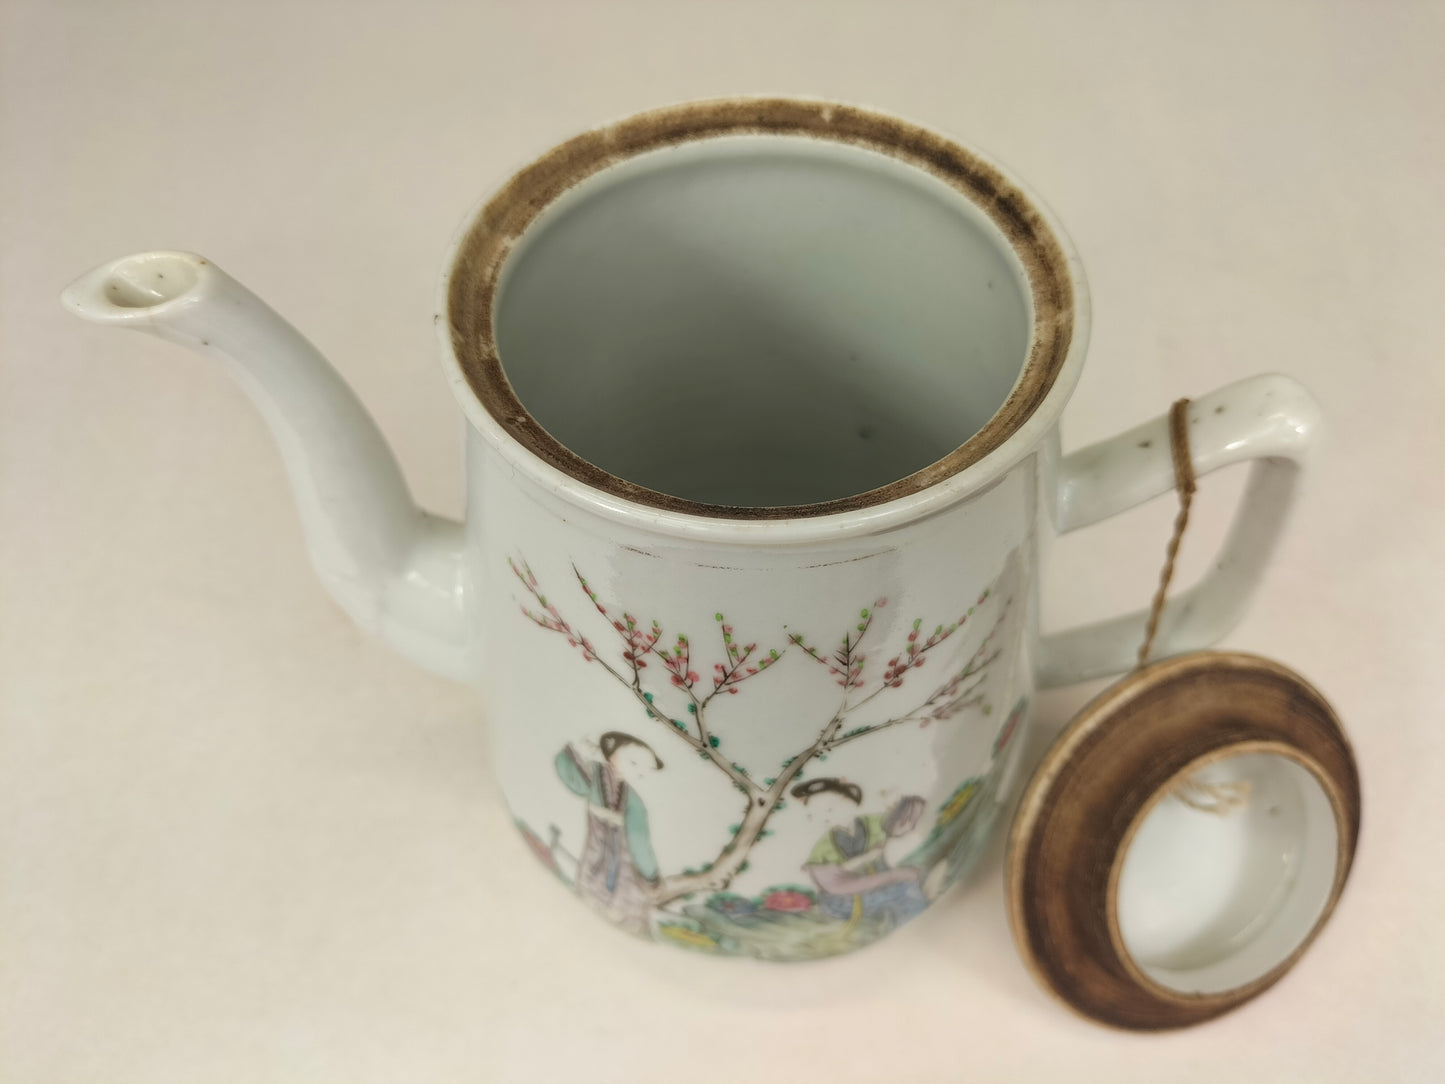 Ấm trà cổ Trung Quốc được trang trí với cảnh vườn // Thời kỳ Cộng hòa (1912-1949)